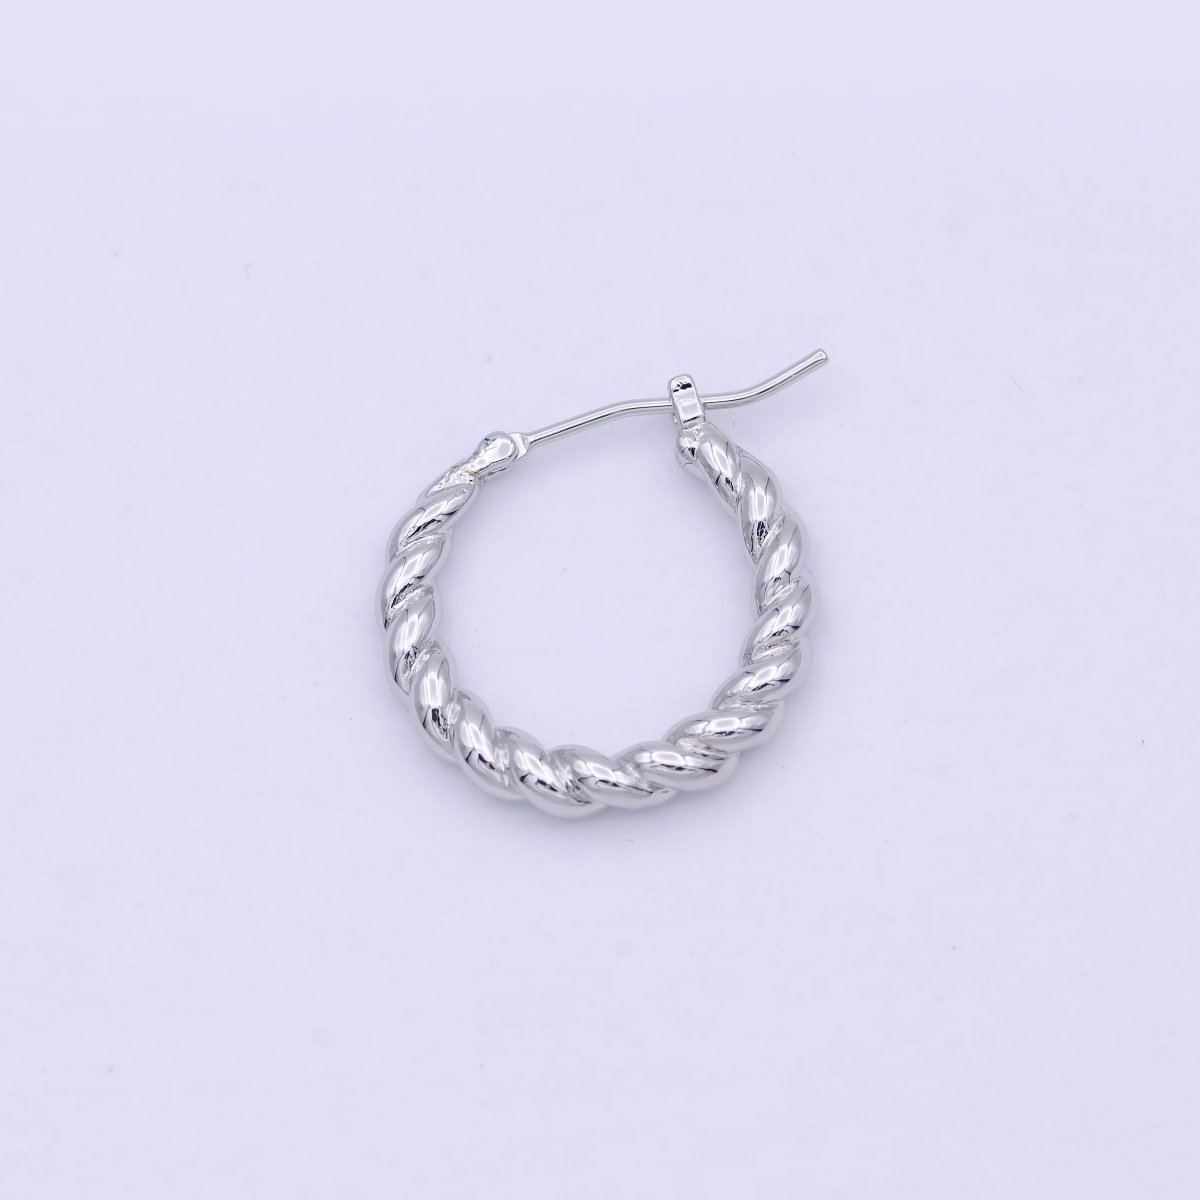 OS Dainty braided Hoop earrings - Twisted hoop earrings - Silver braided hoop earrings P-255 - DLUXCA